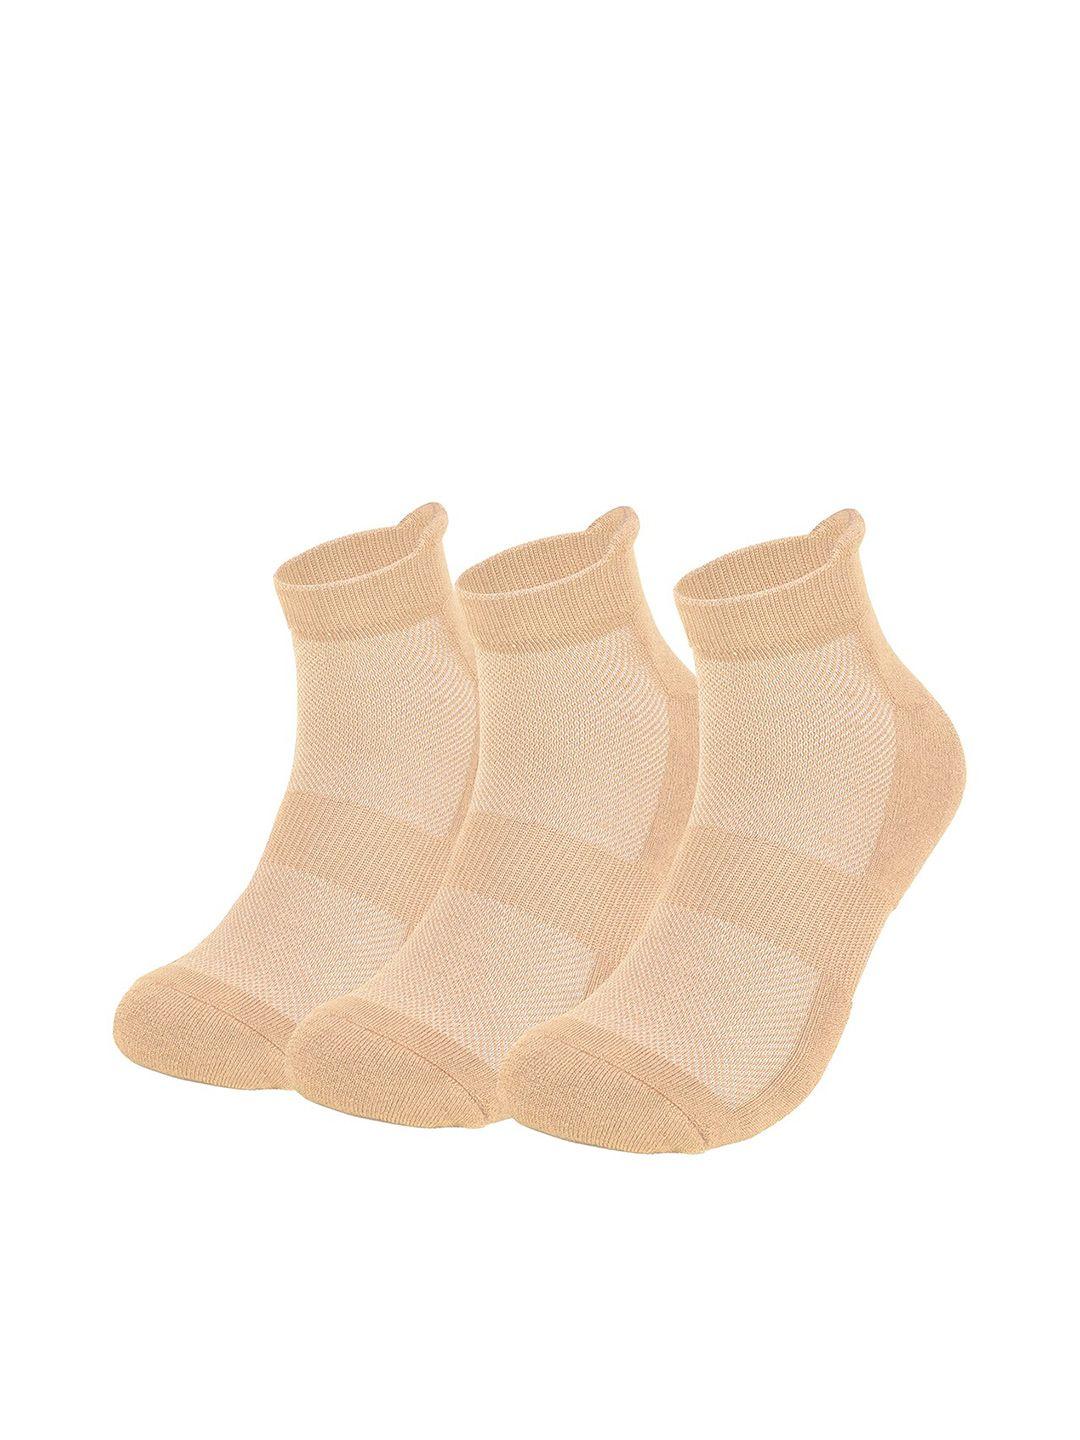 mush pack of 3 ankle length bamboo socks